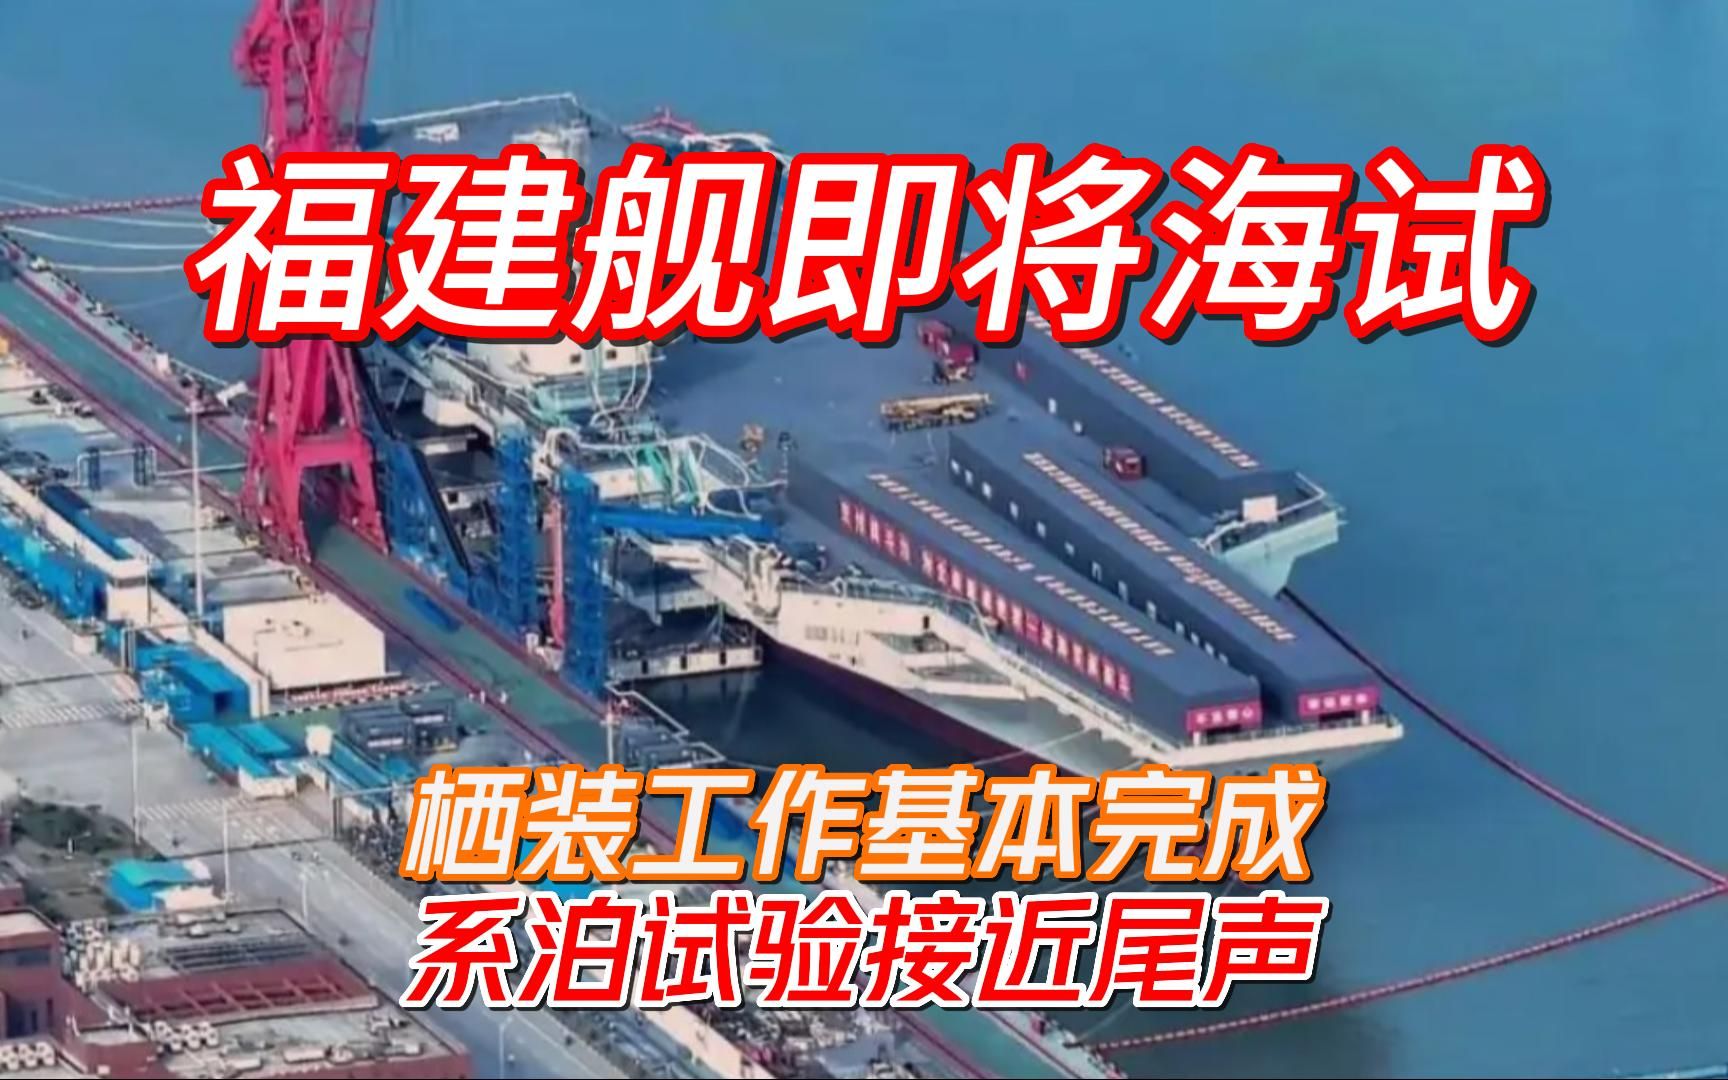 中国第三艘航母下水命名“福建舰” 与福特号都采用电磁弹射 – 博讯新闻网